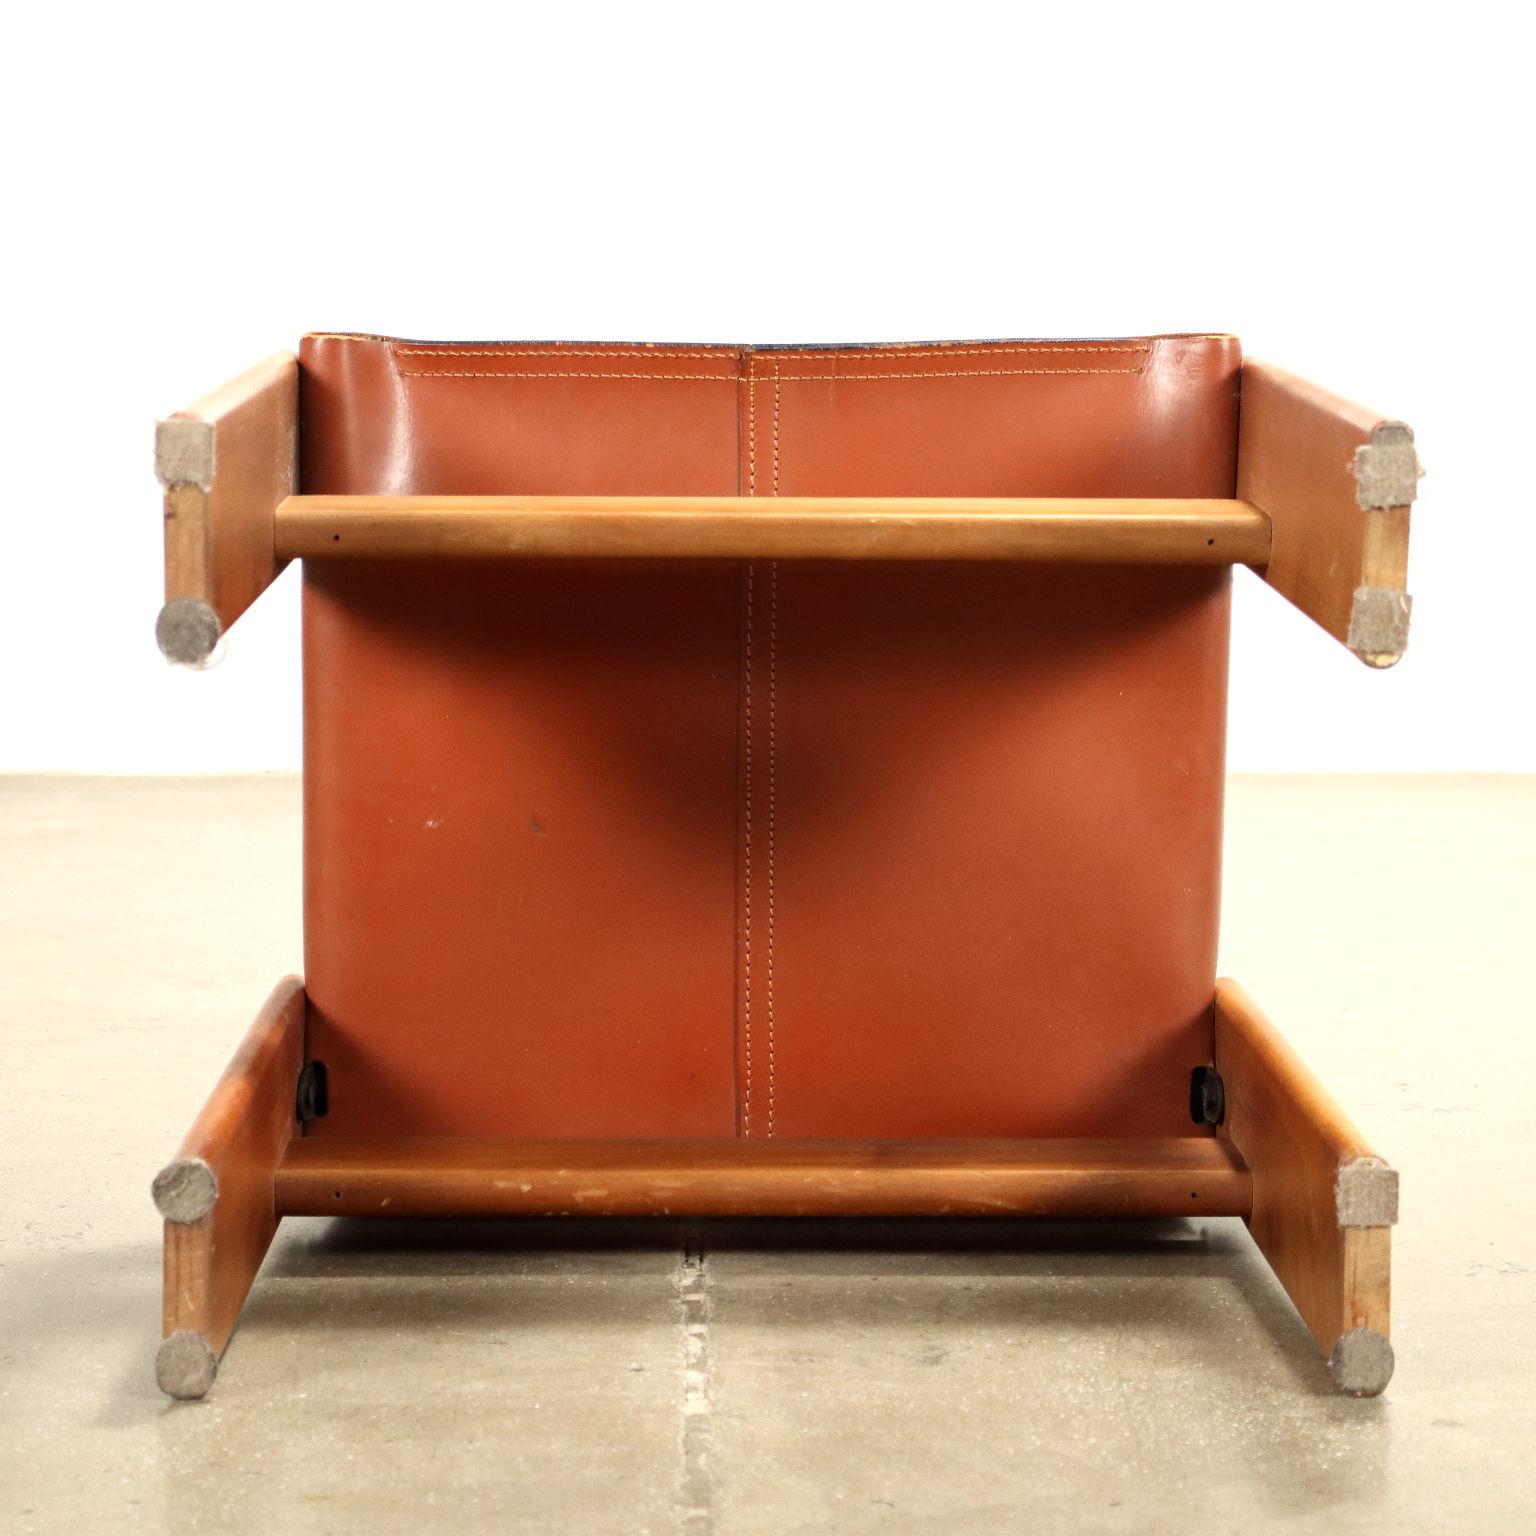 Satz  vier 'Monk'-Stühle Afra und Tobia Scarpa für Molteni 1970er Jahre (Leder)